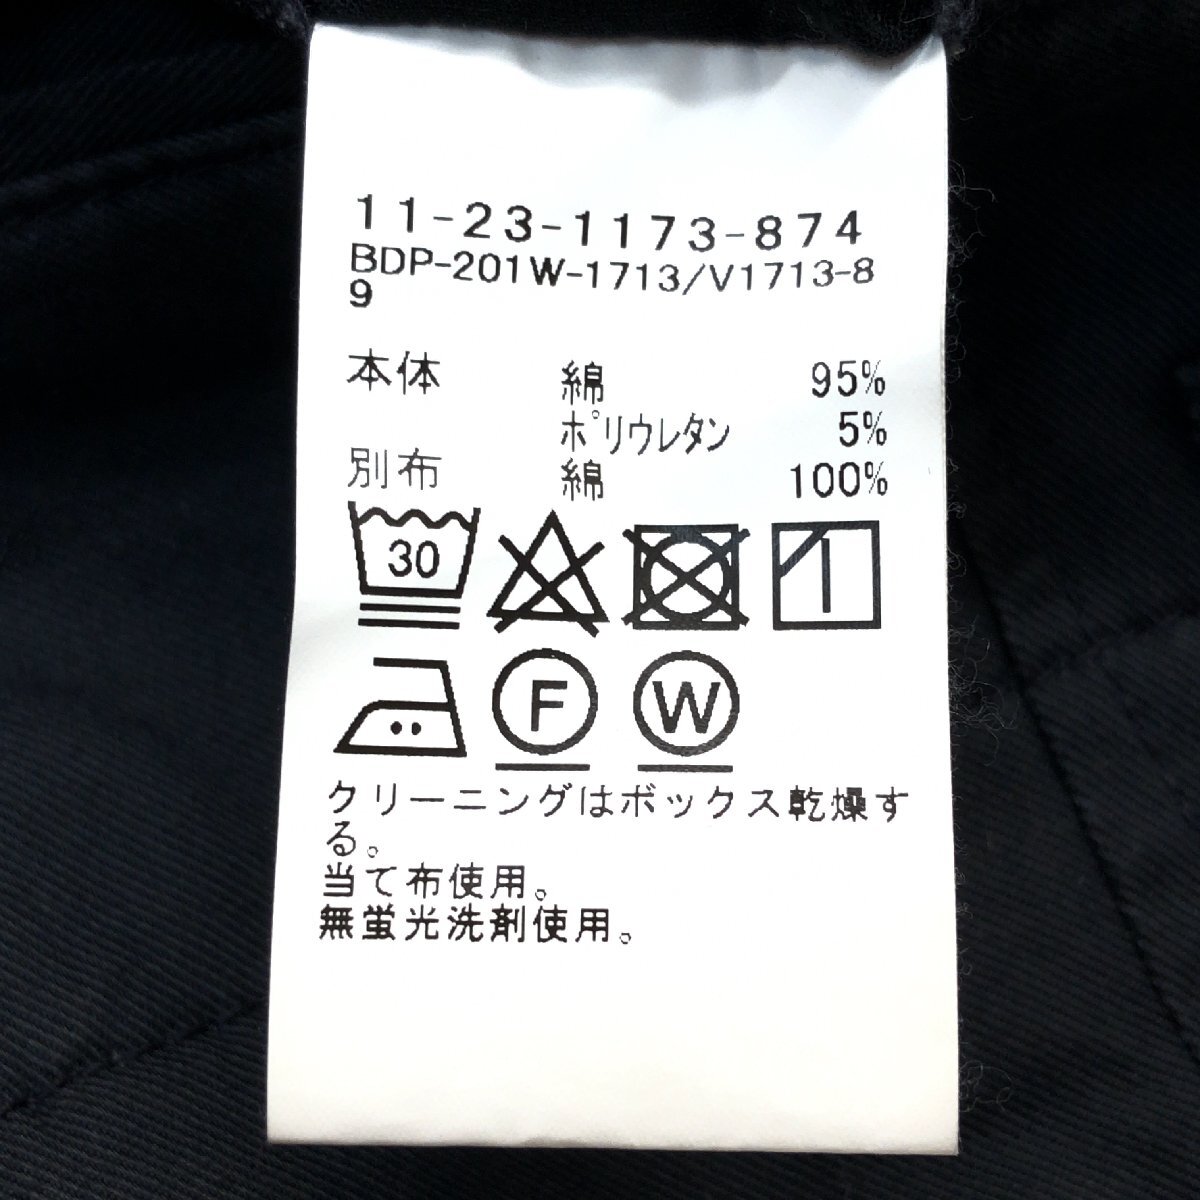 BEAMS Beams стрейч конический брюки-чинос M w82 угольно-серый casual сделано в Японии внутренний стандартный товар мужской джентльмен 